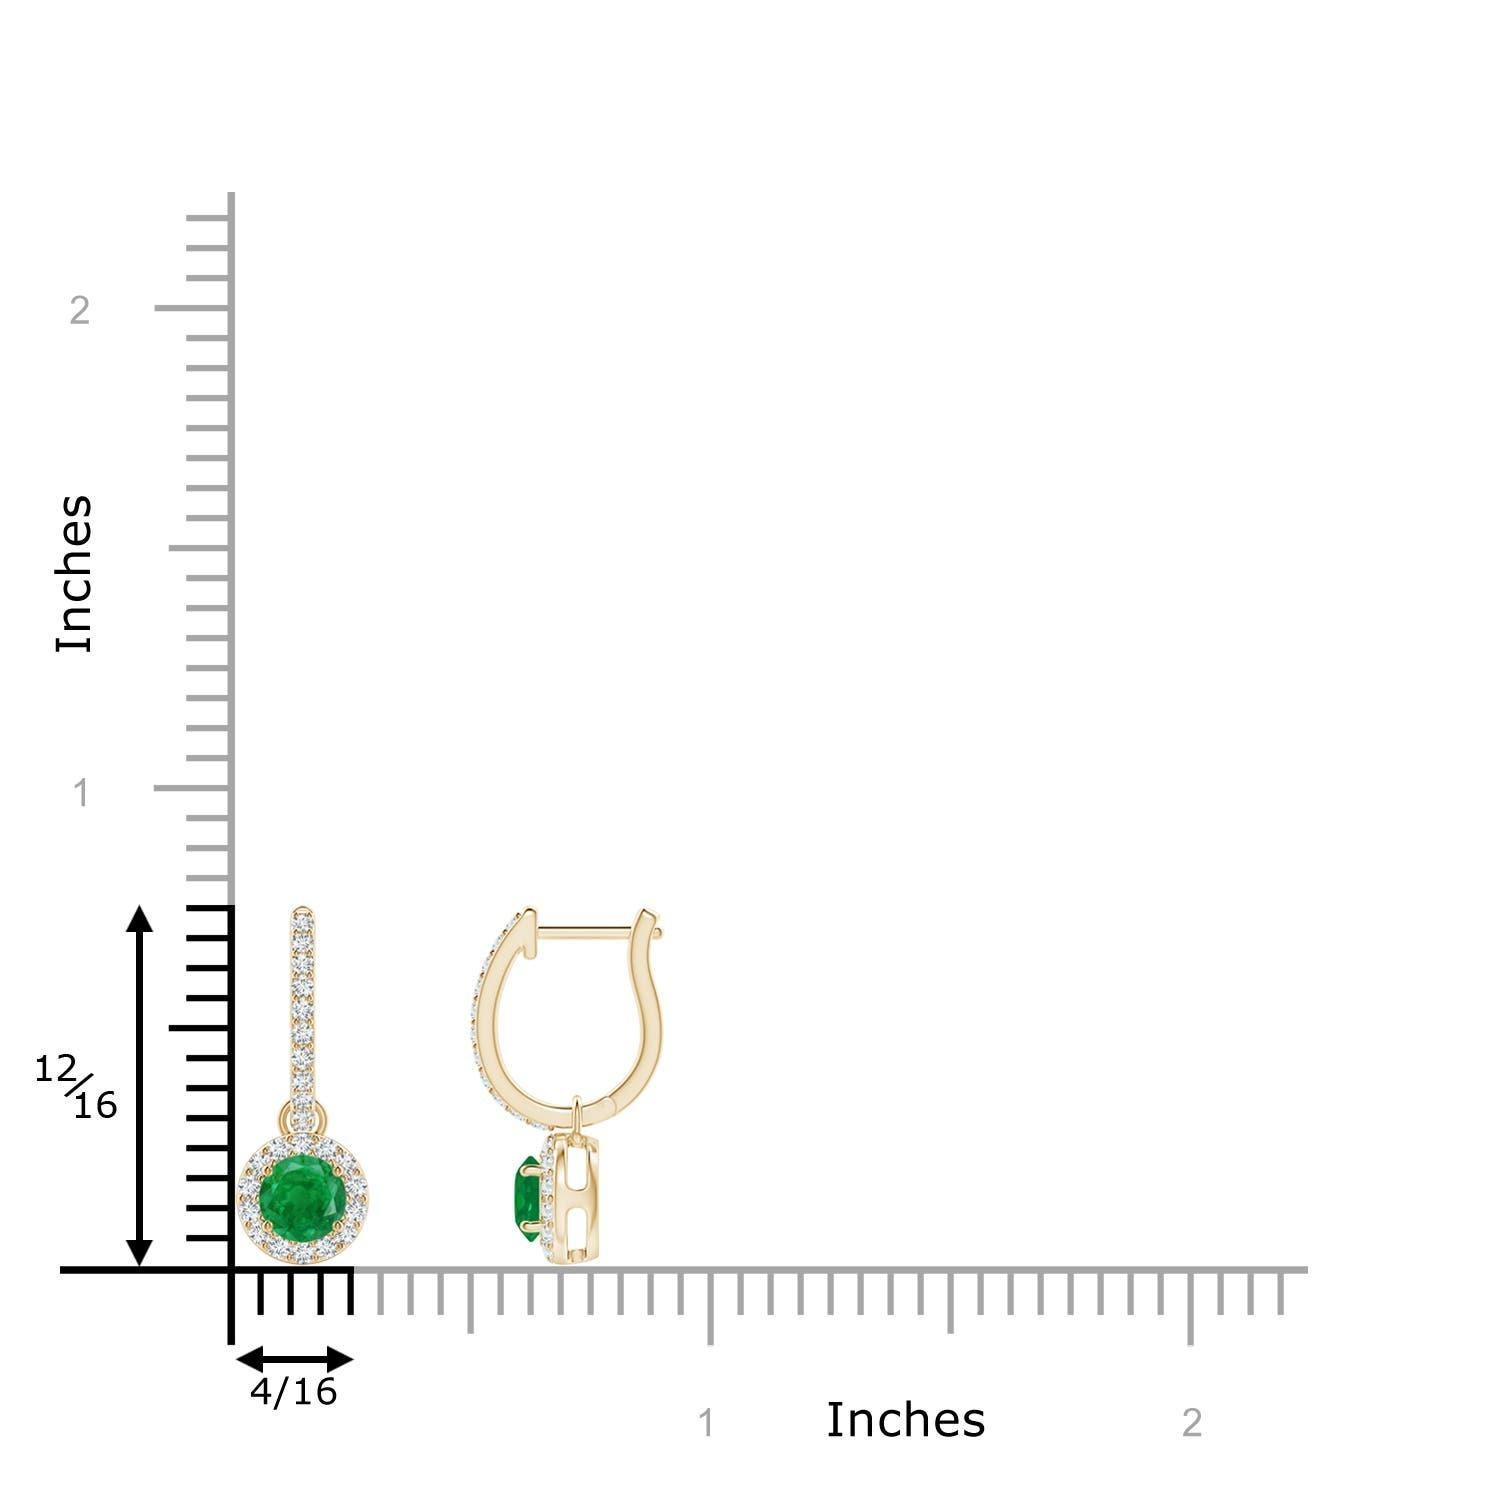 Eingebettet in einen schimmernden Halo aus runden Diamanten sind runde, sattgrüne Smaragde in Zackenfassung. Die diamantenen Akzente auf dem Ring verleihen diesen Smaragd-Ohrringen aus 14-karätigem Gelbgold einen zusätzlichen Hauch von Eleganz.
Der